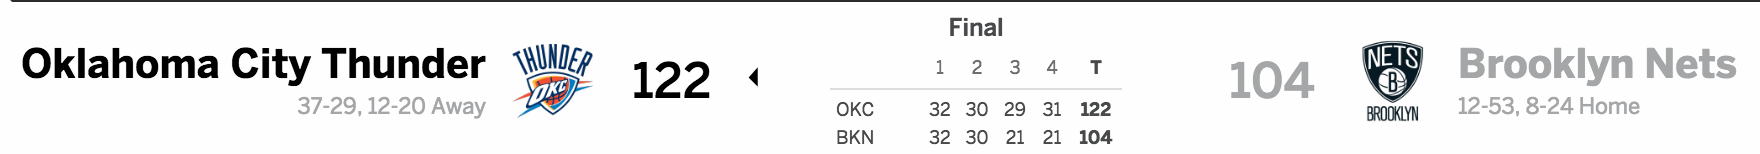 Brooklyn Nets vs. Oklahoma City Thunder 03/14/17 Score